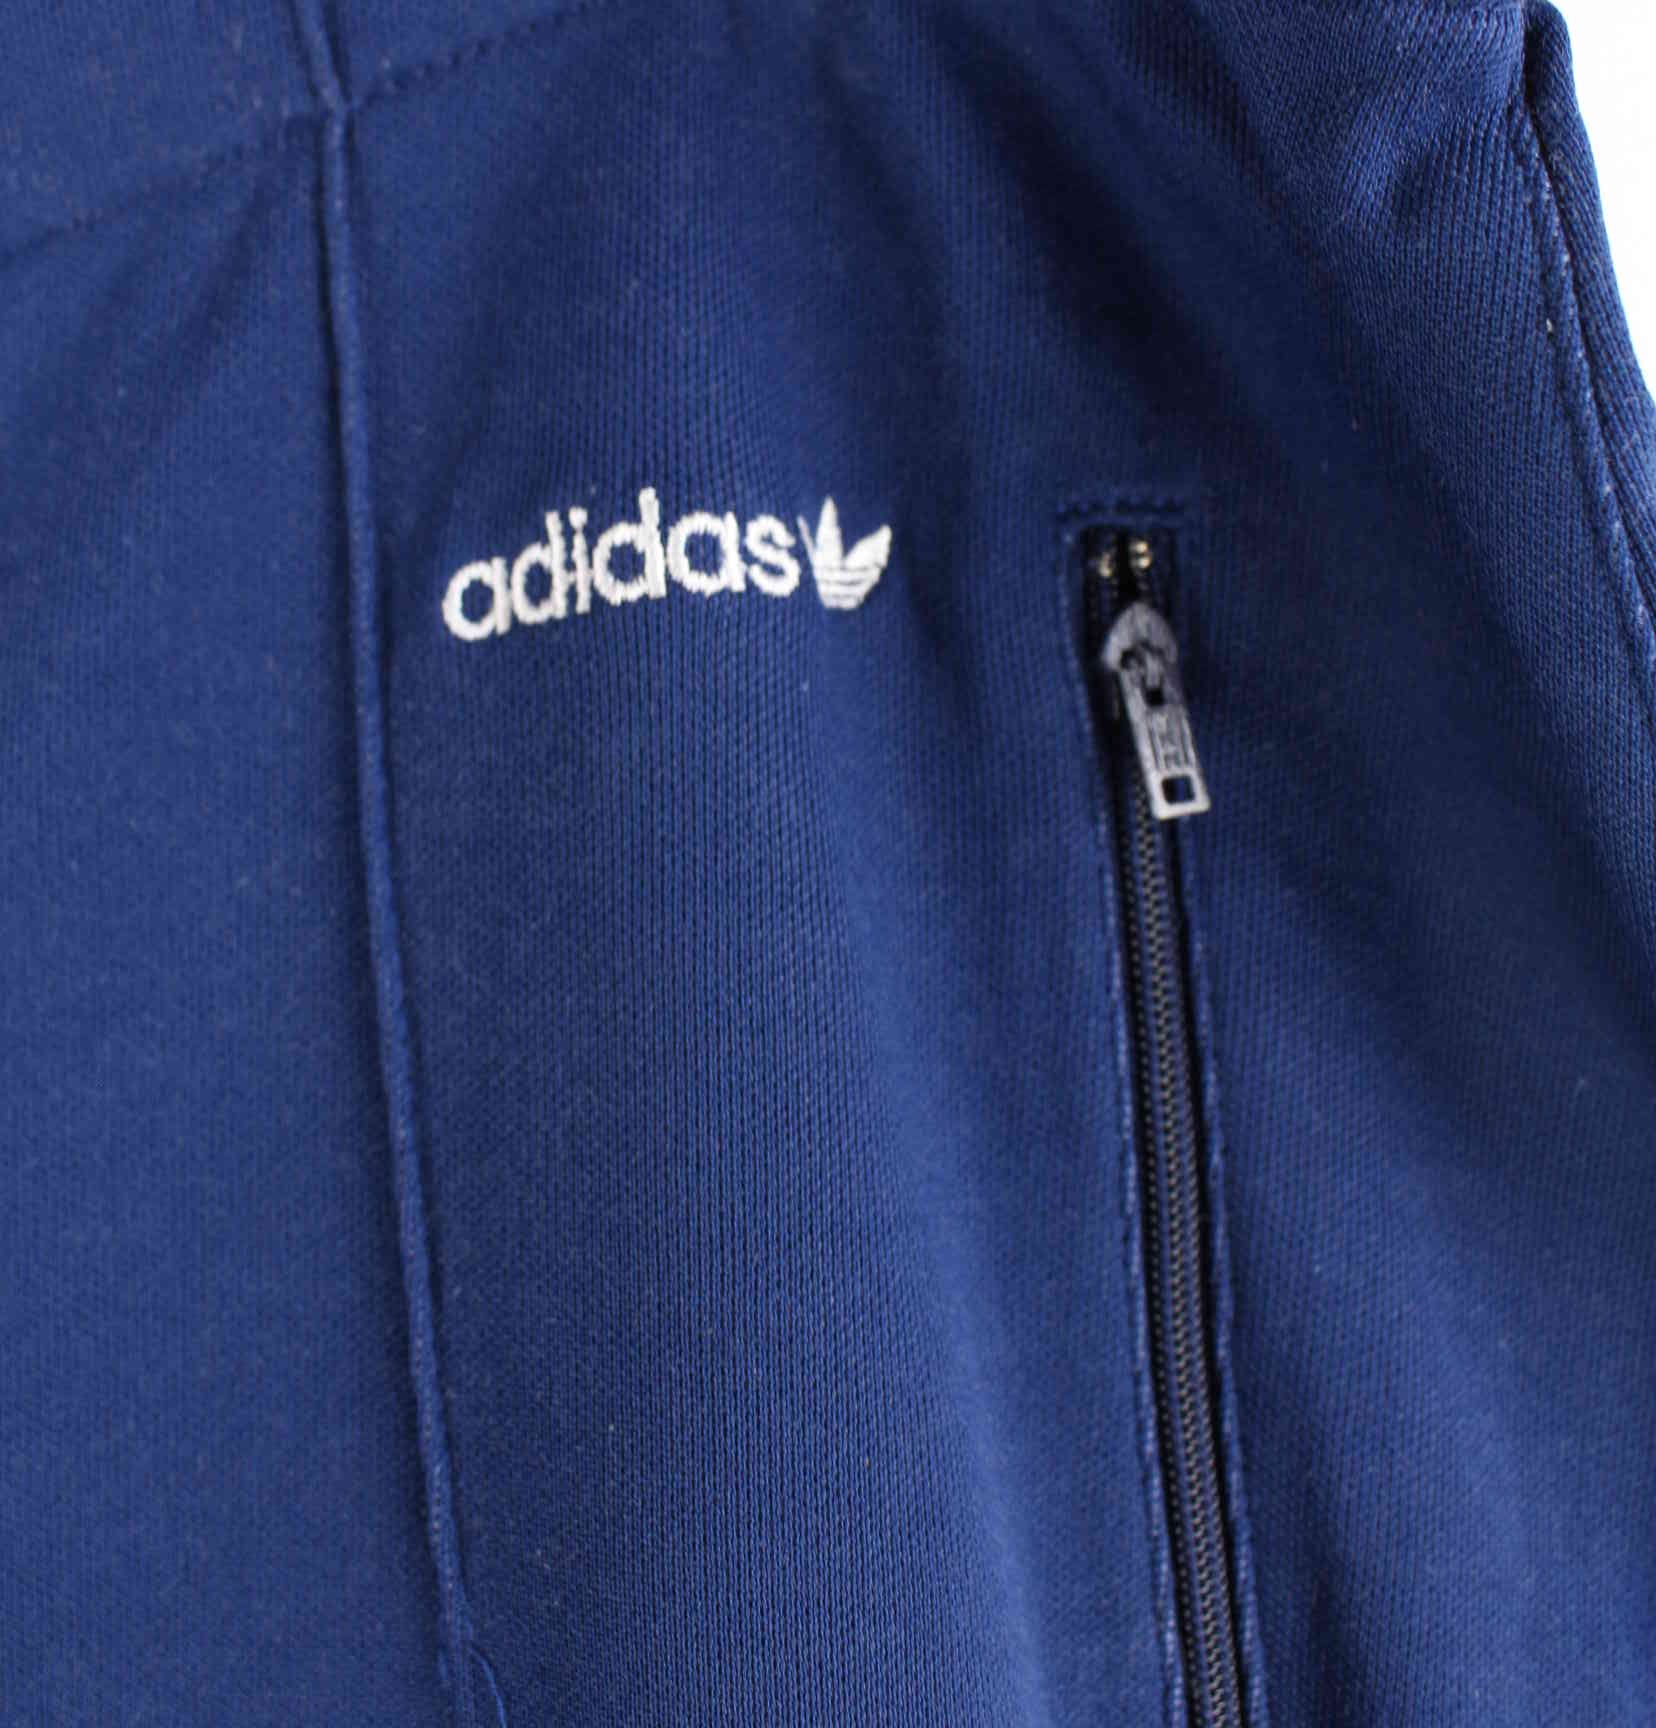 Adidas 80s Vintage Trefoil Track Pants Blau S (detail image 1)